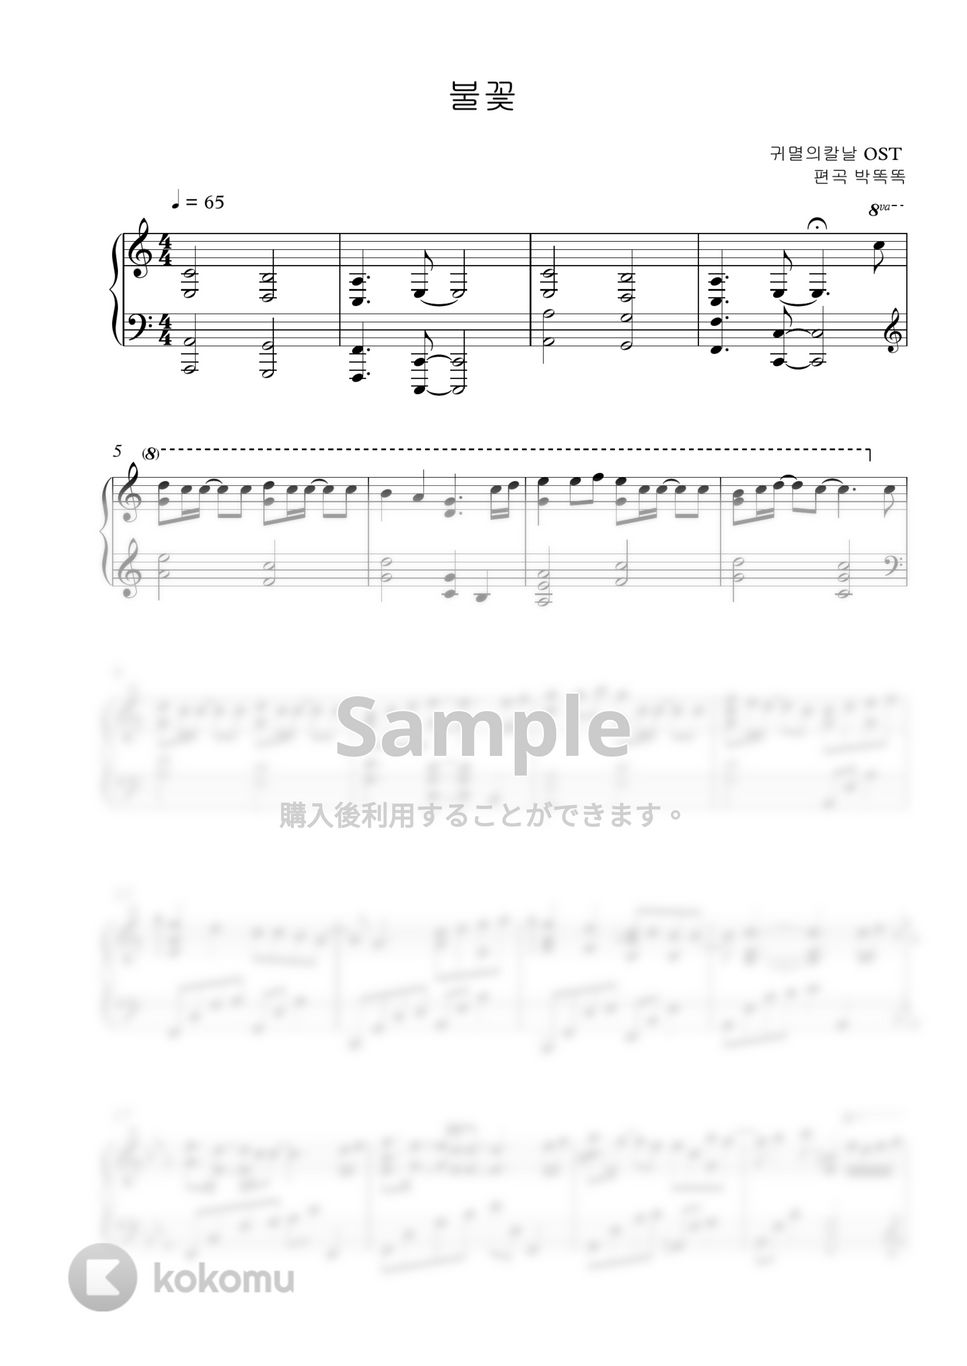 鬼滅の刃 OST - 炎(Homura) (Calm piano ver.🎹) by PARK- DDOK DDOK